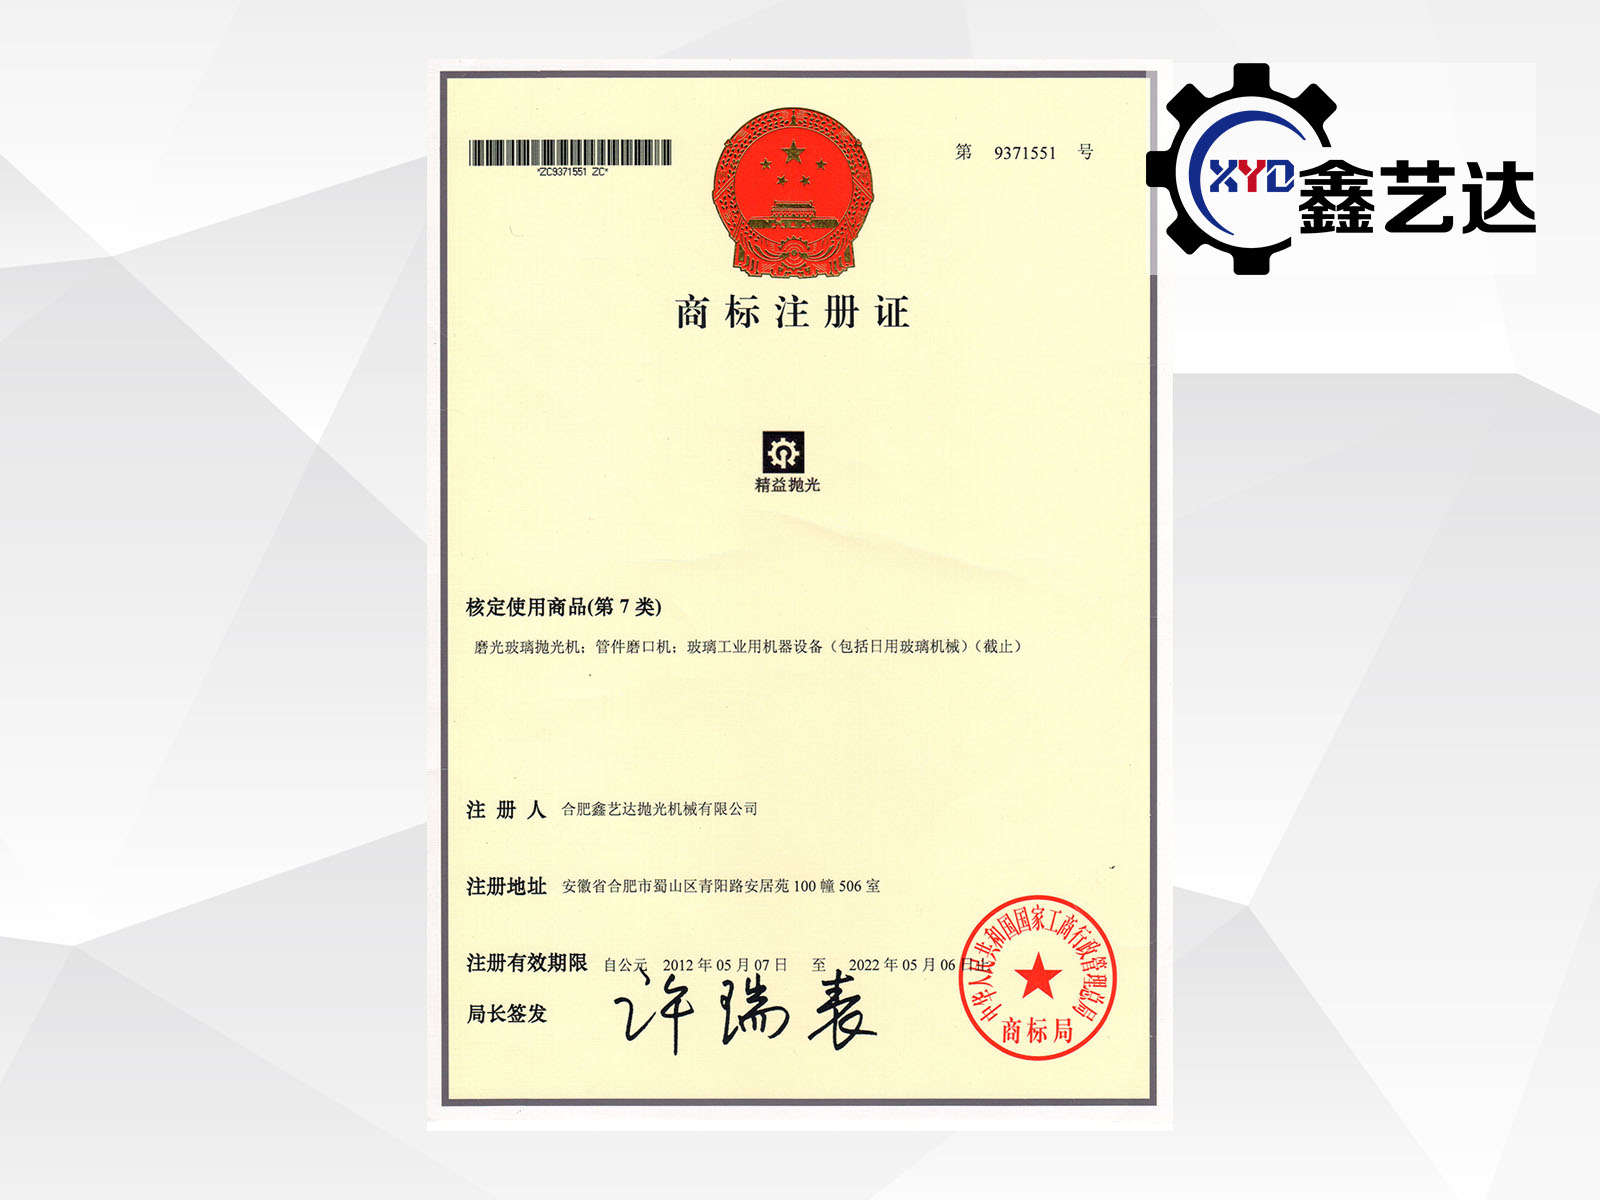 Certificato di registrazione del marchio "Lean lucidatura"